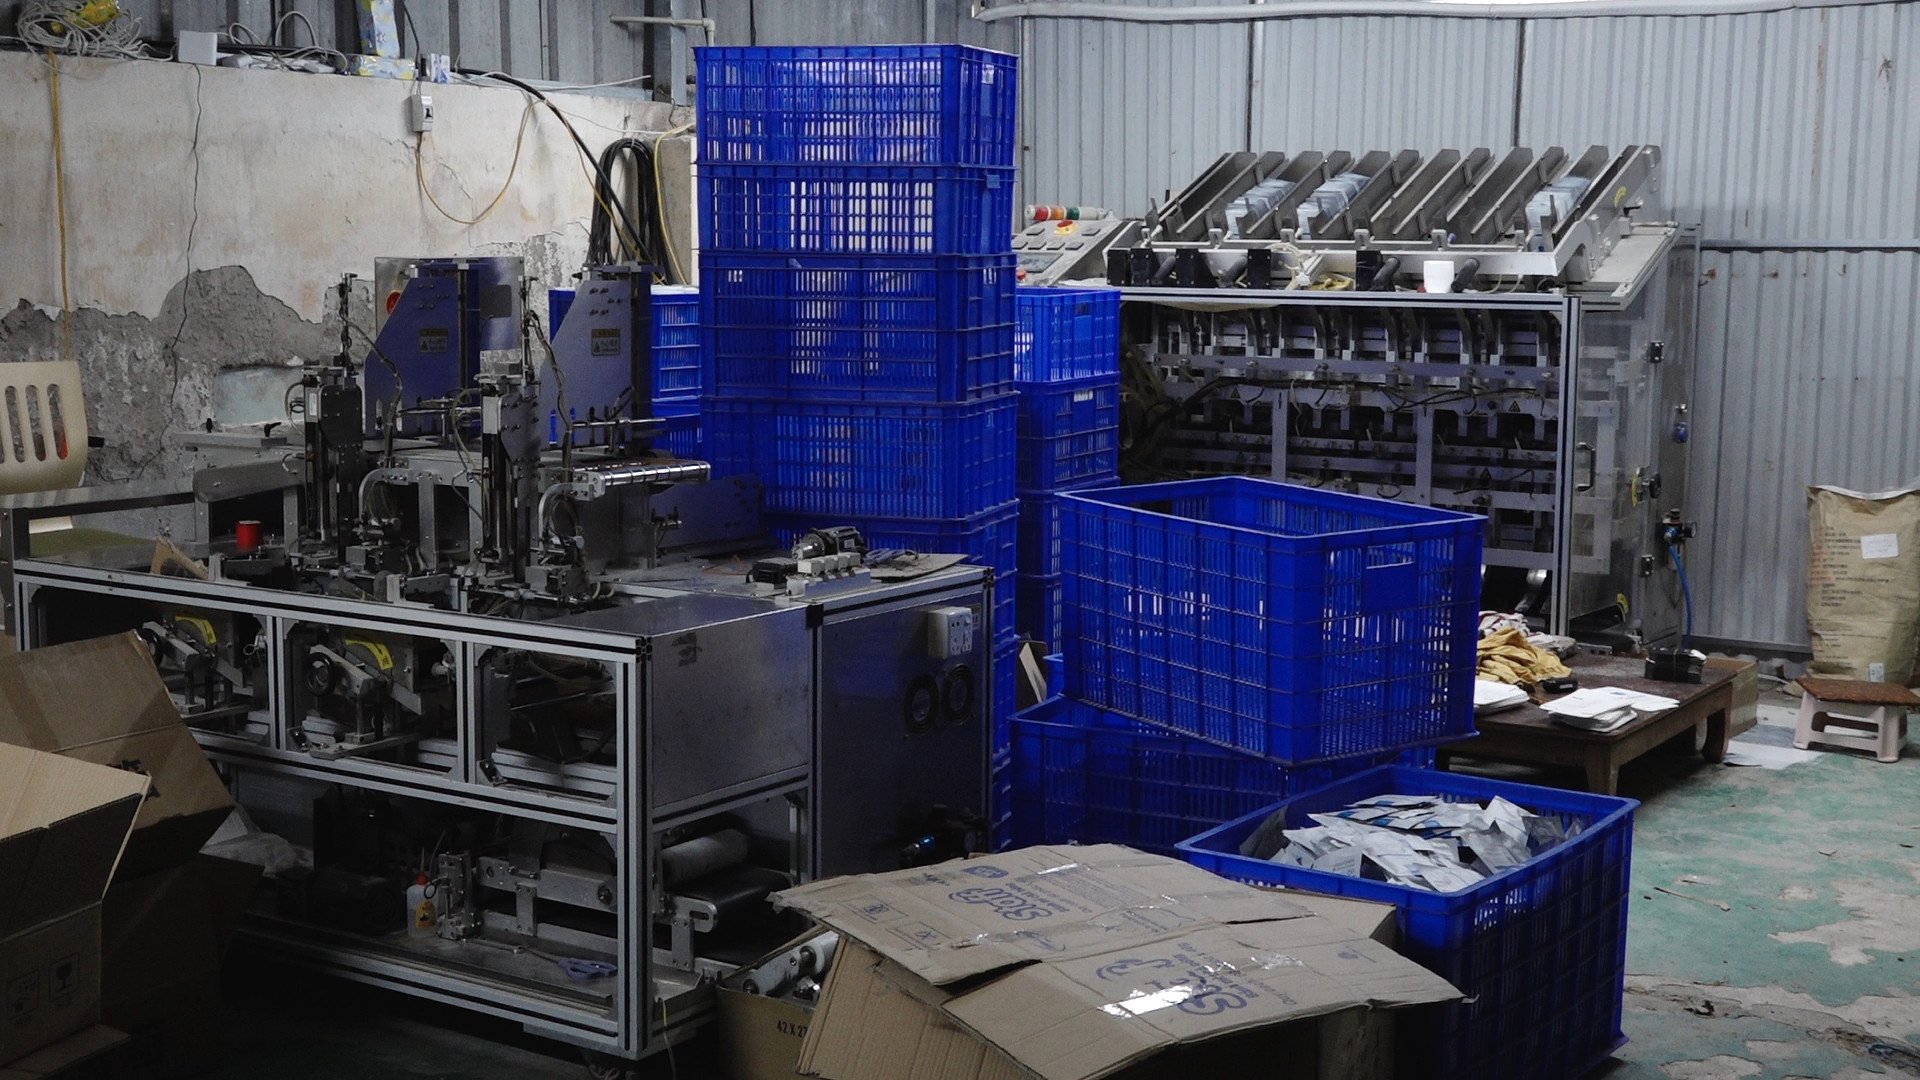 Máy móc, thiết bị dùng cho việc đóng gói, gia công sản phẩm bị lực lượng chức năng phát hiện. 